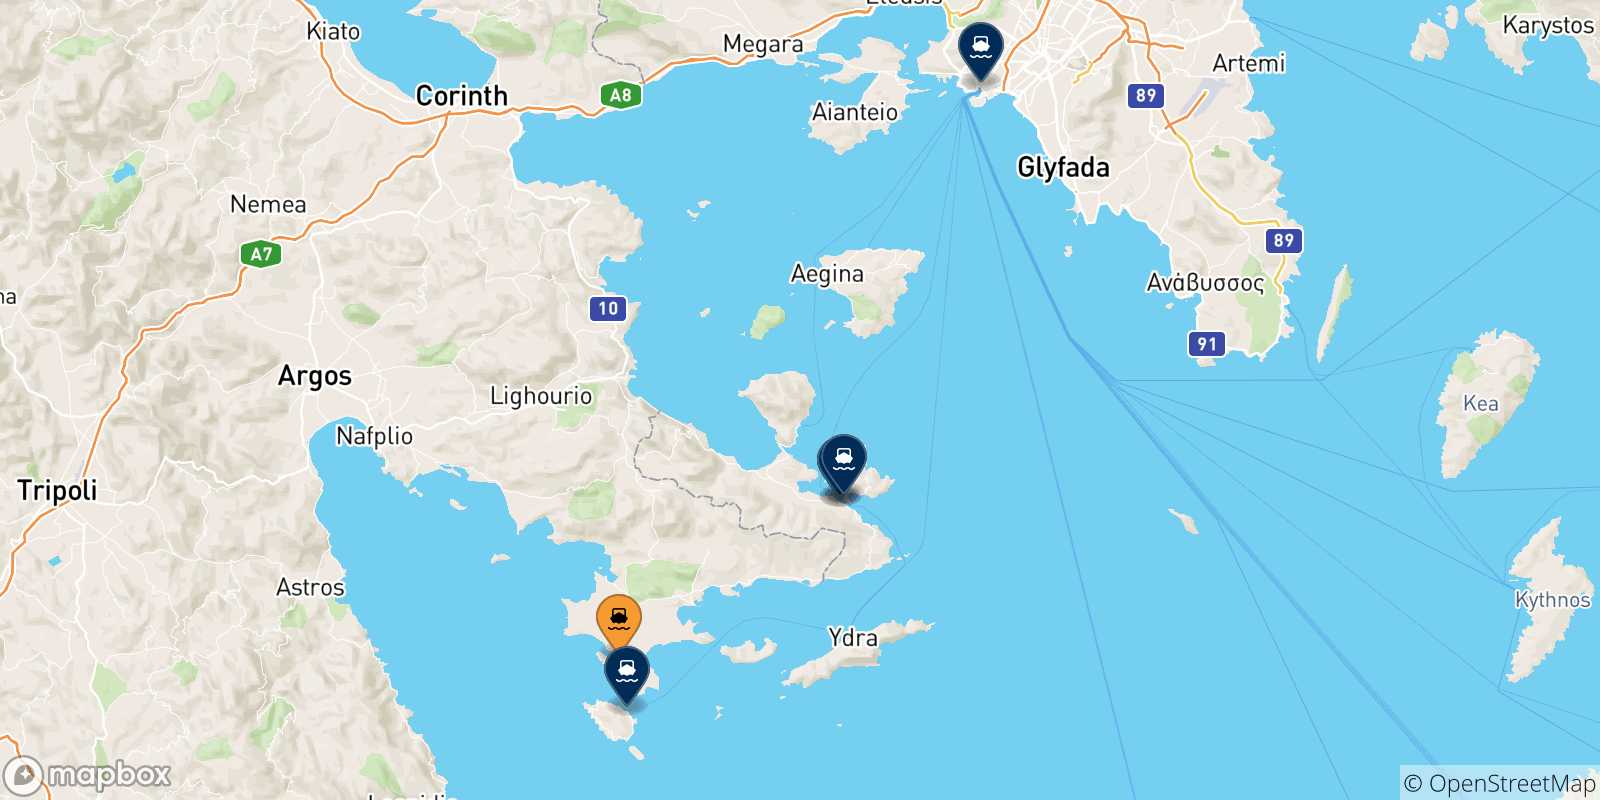 Mappa delle possibili rotte tra Porto Heli e la Grecia